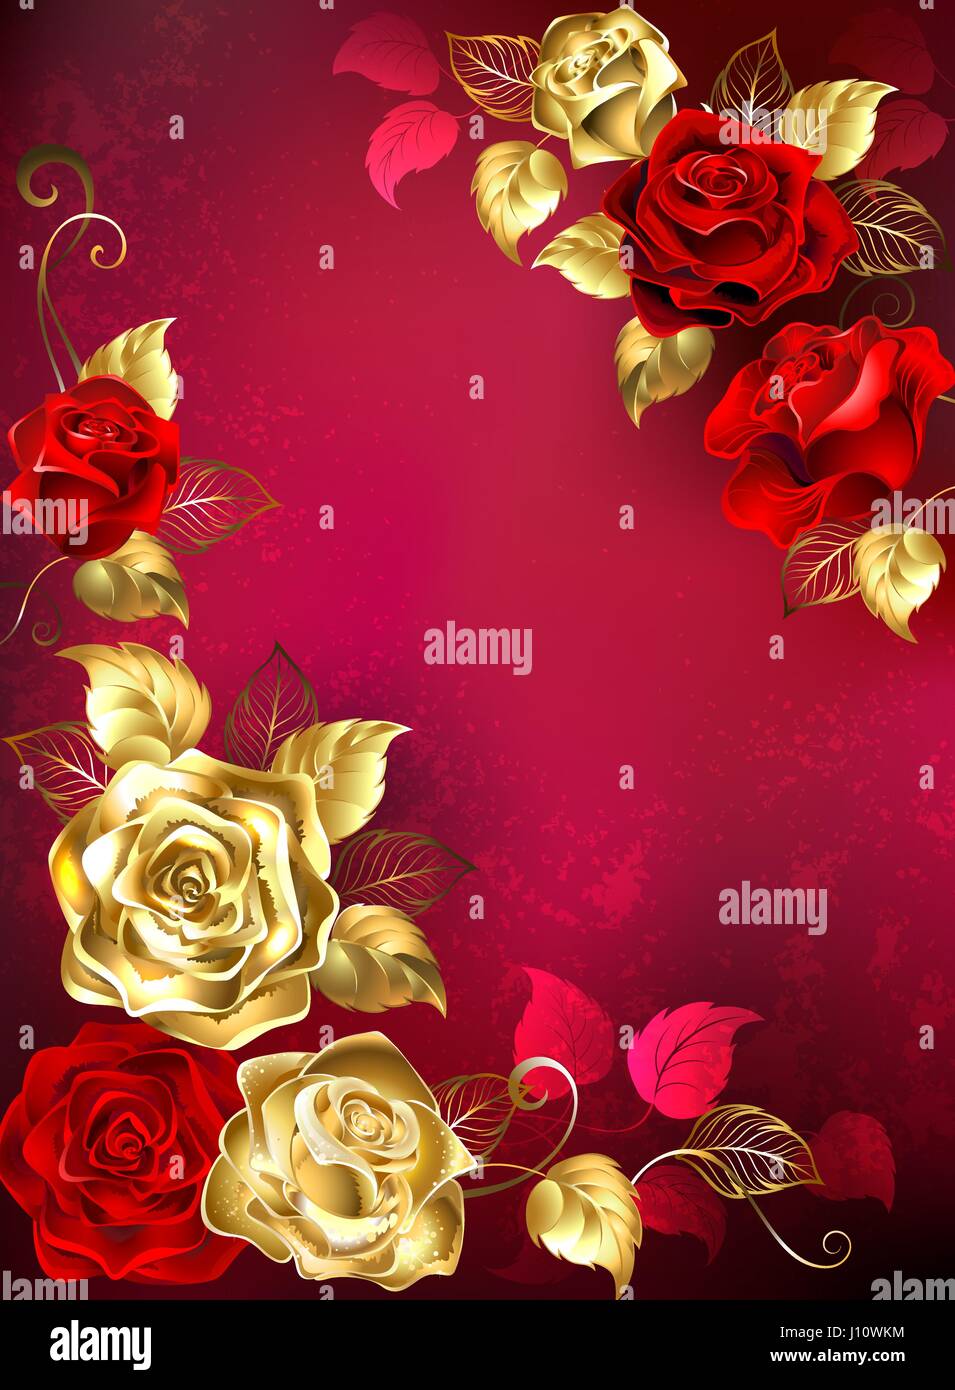 Grußkarte mit roten und goldenen Schmuck Rosen mit Gold Blätter auf einen roten strukturierten Hintergrund. Design mit goldenen Rosen. Stock Vektor